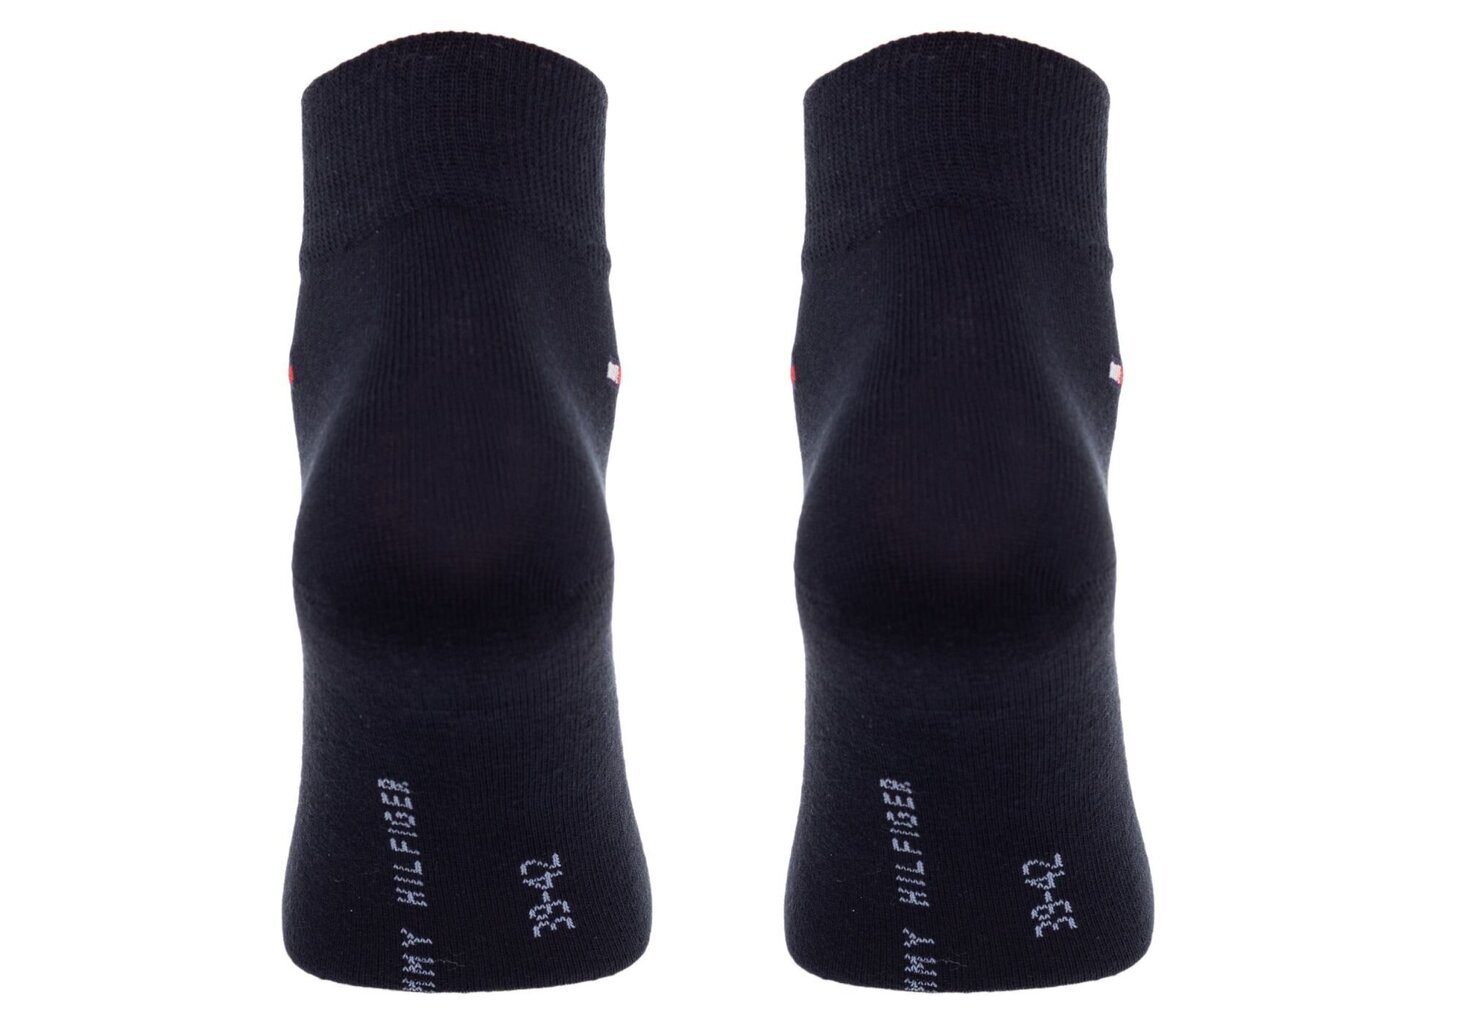 Vyriškos kojinės Tommy Hilfiger 2 poros, juodos/tamsiai mėlynos 40981 kaina ir informacija | Vyriškos kojinės | pigu.lt